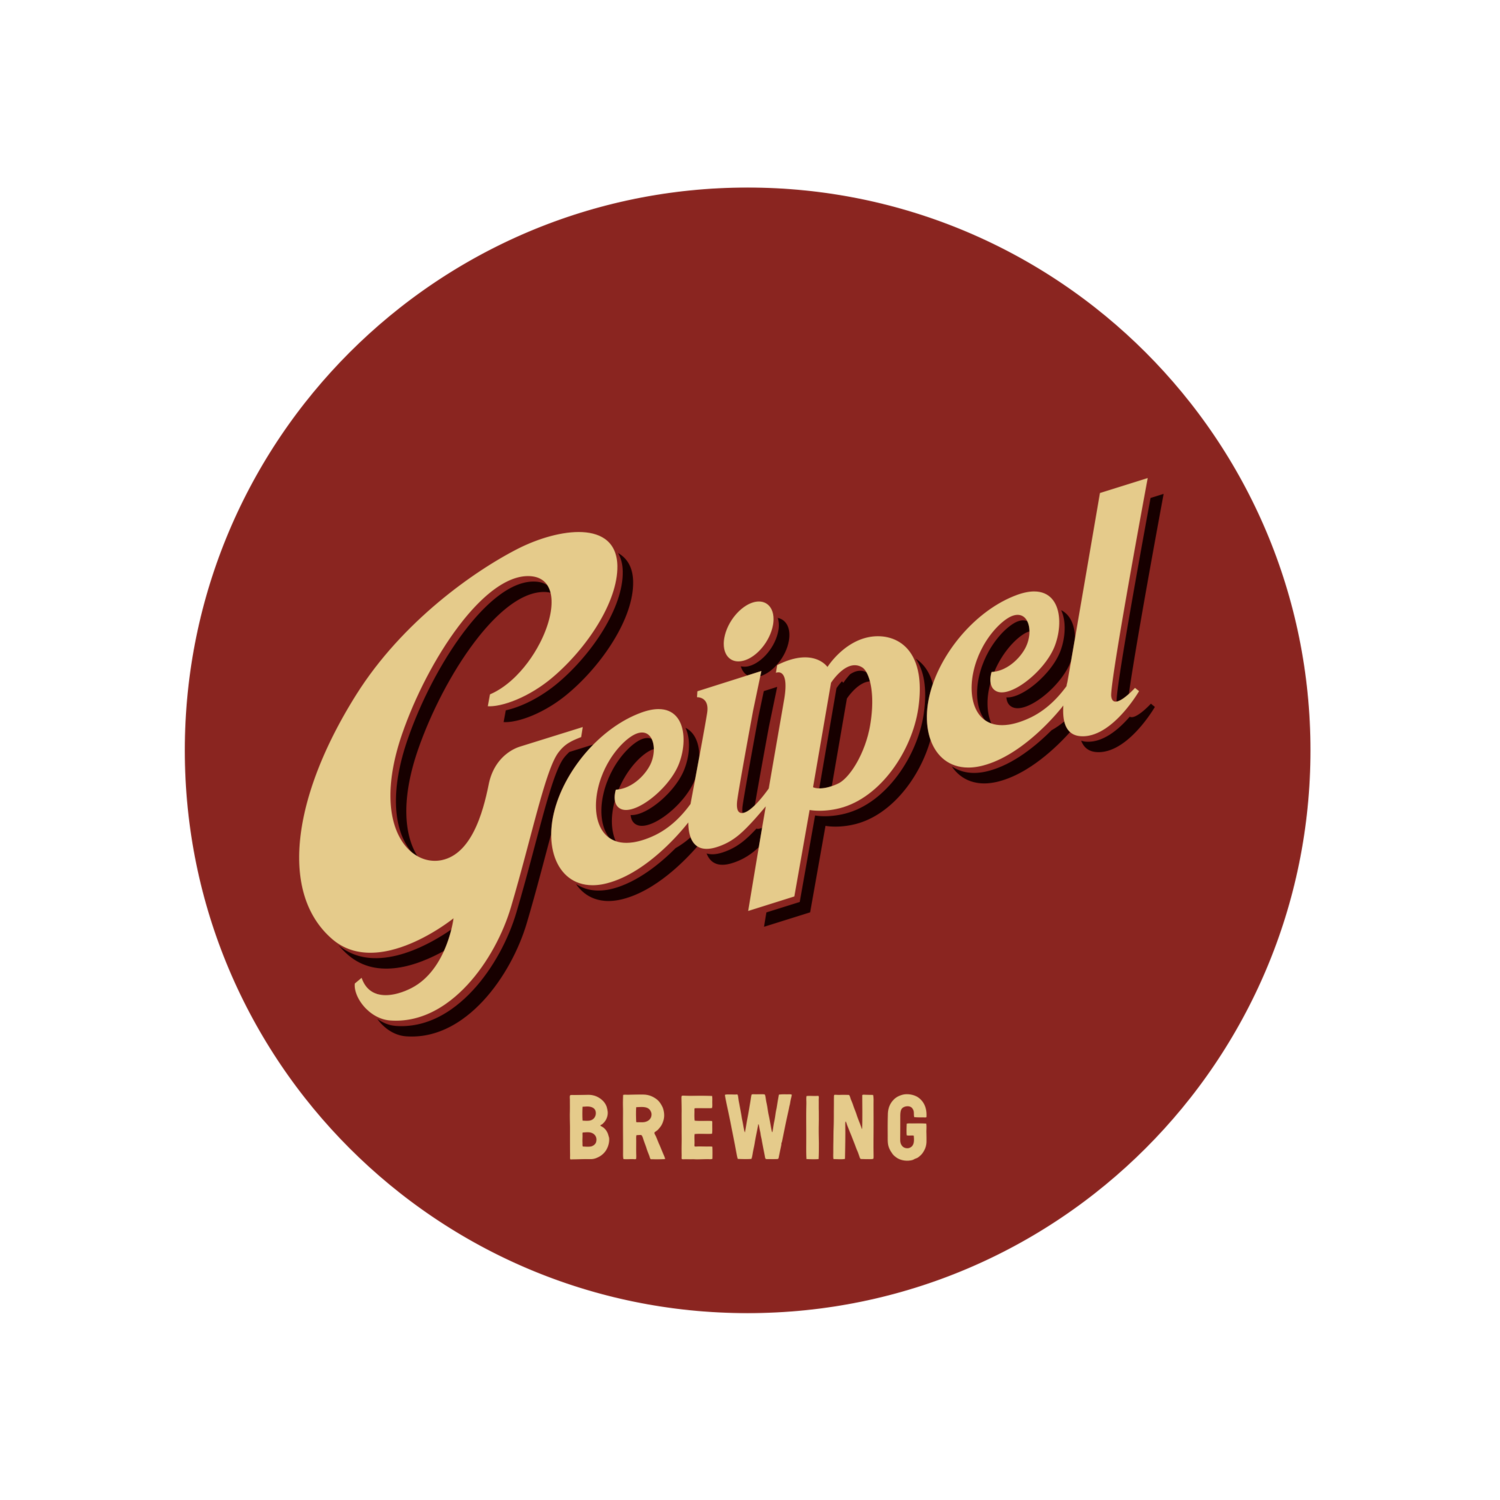 Geipel Brewing